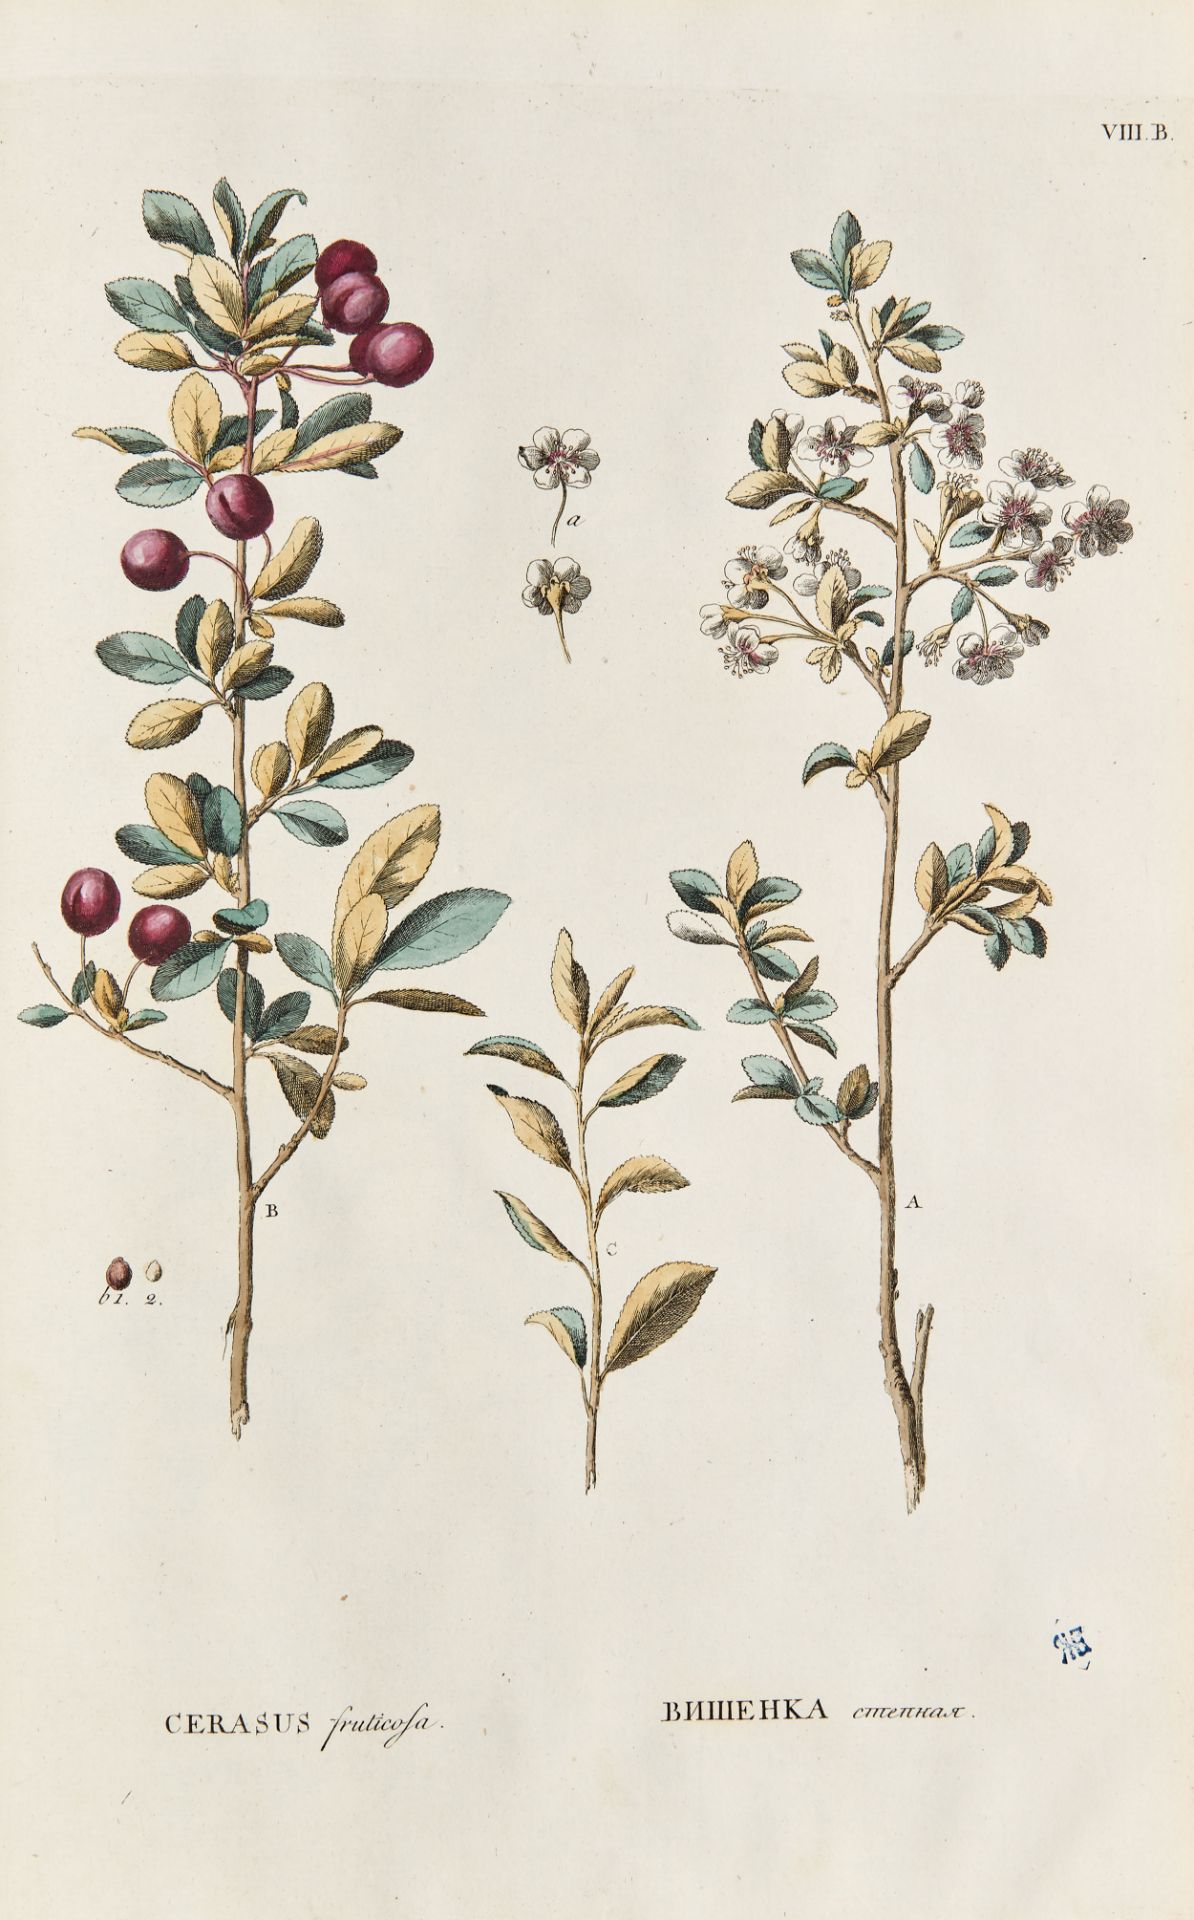 PALLAS, Peter Simon (1741-1811). Flora rossica seu stirpium imperii rossici per Europam et Asiam - Image 4 of 6